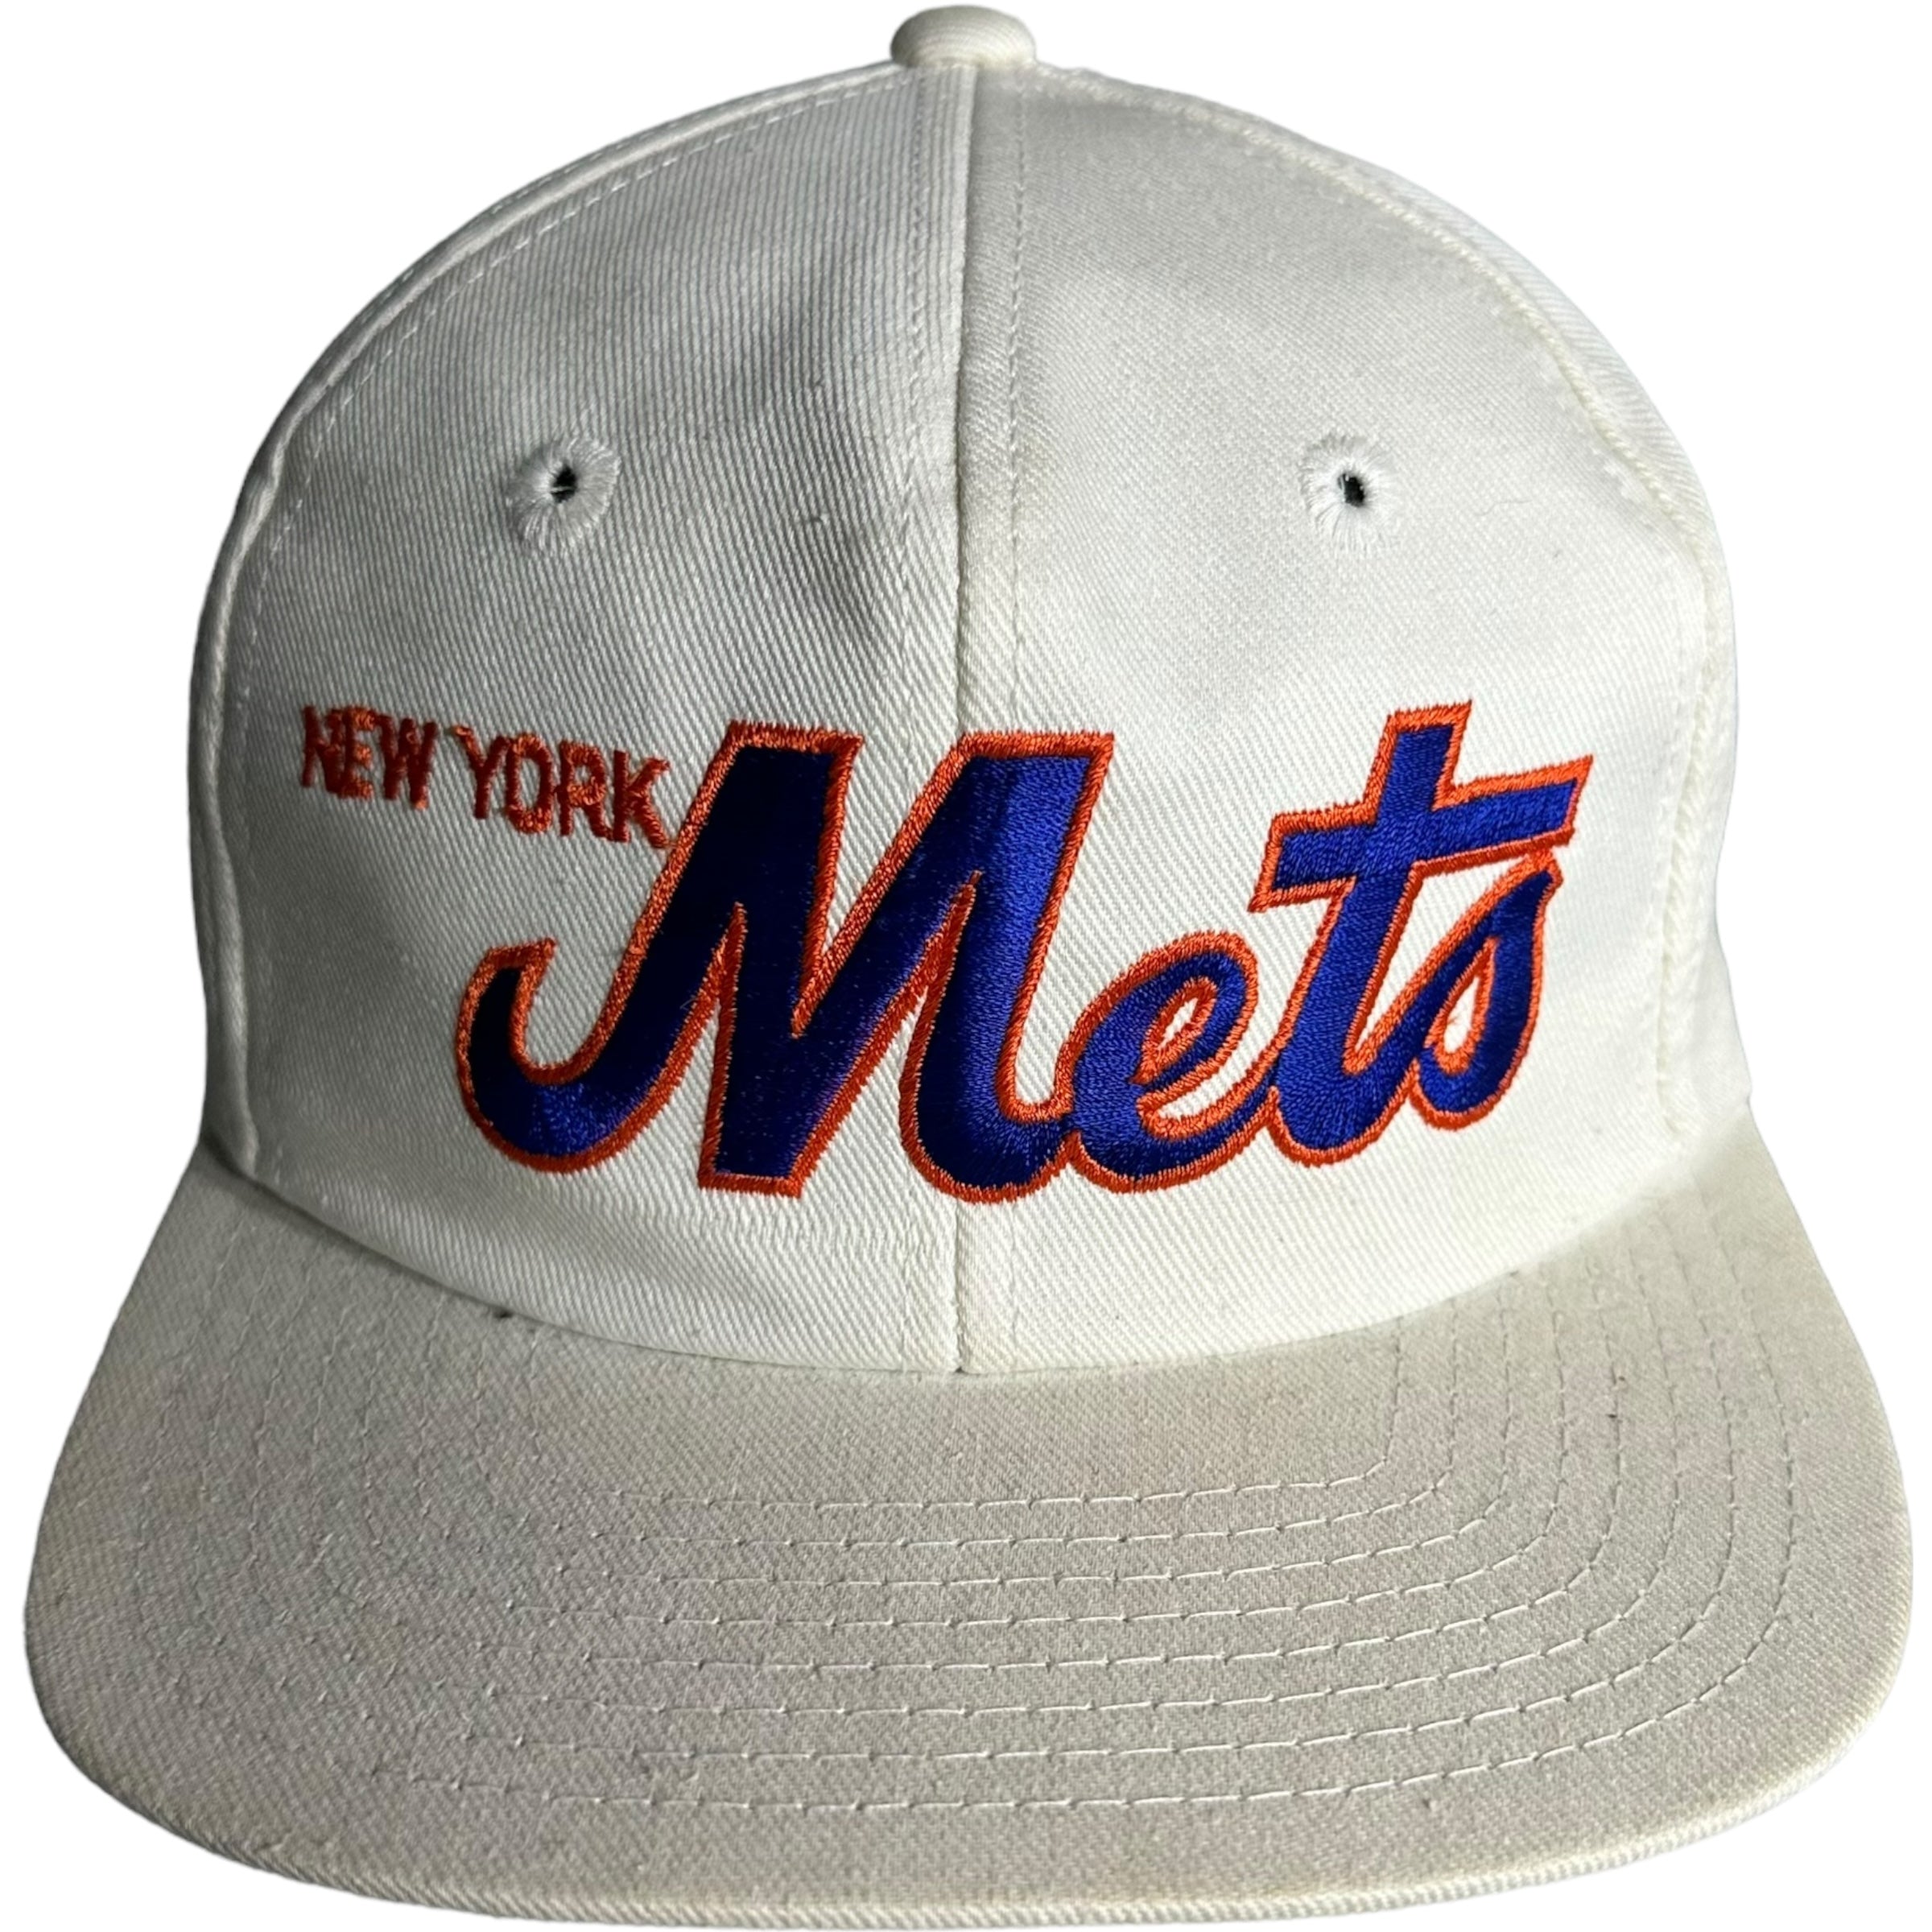 Vintage New York Mets Snapback Hat